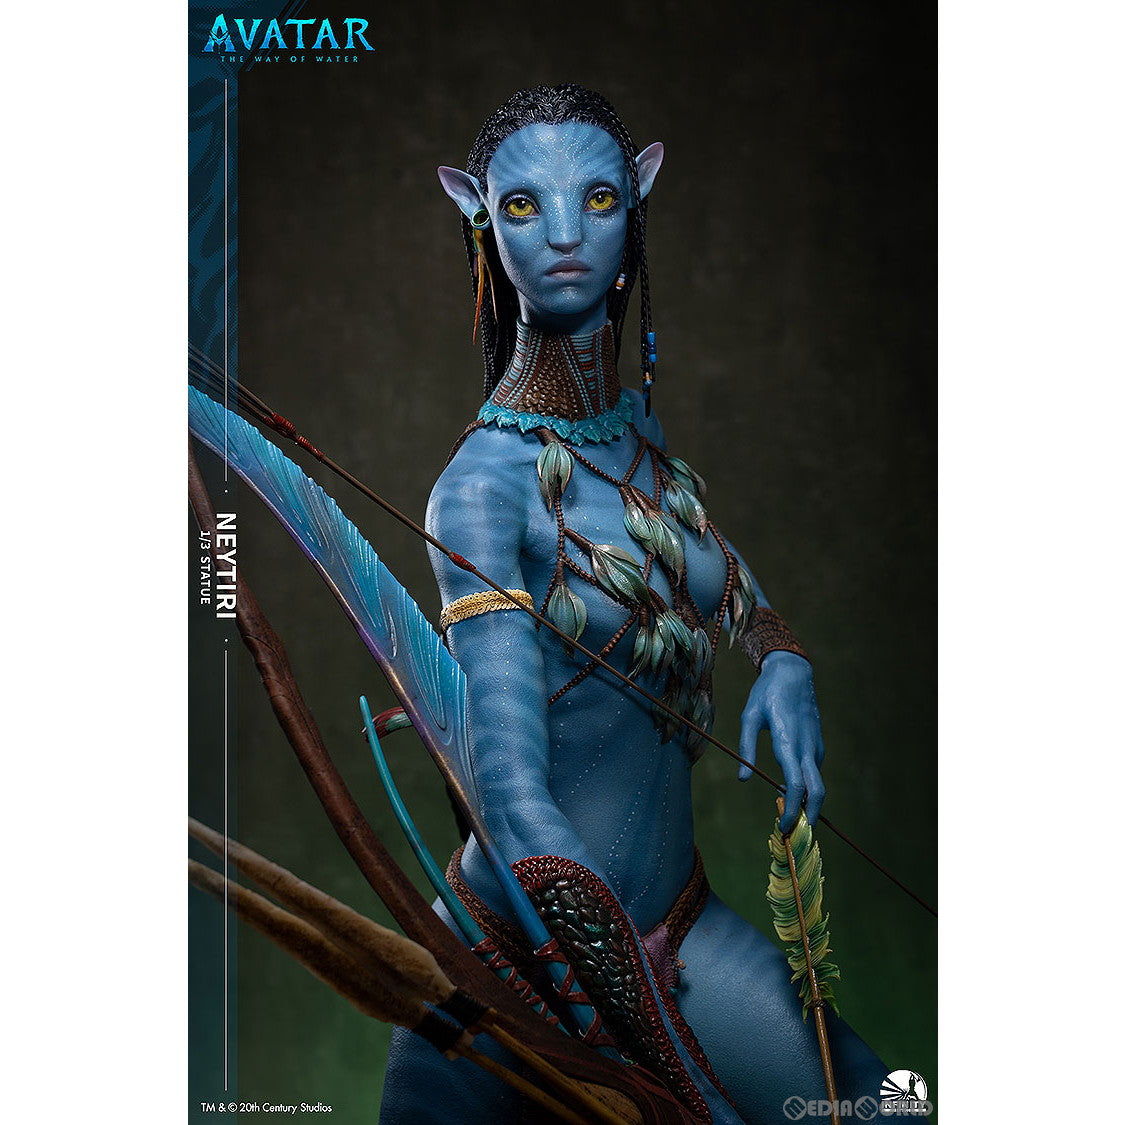 【予約安心出荷】[FIG]「Avatar: The way of water」Neytiri(アバター:ウェイ・オブ・ウォーター ネイティリ) 1/3全身像 完成品 フィギュア Infinity Studio(インフィニティスタジオ)/グッドスマイルカンパニー(2025年5月)